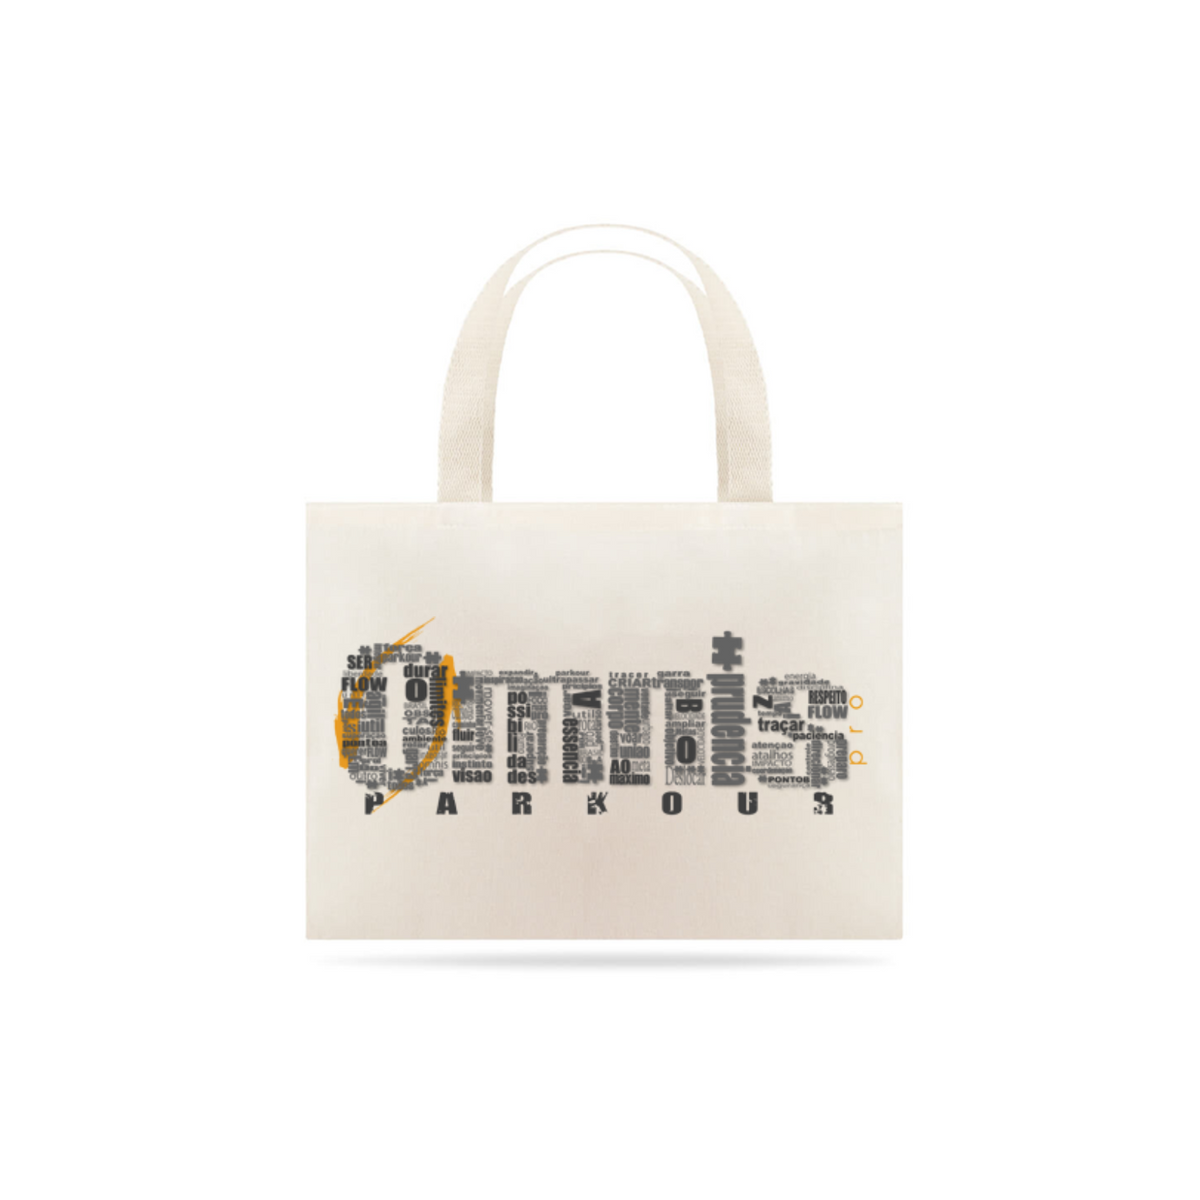 Nome do produto: Omnis pro parkour - eco bag grande -M001